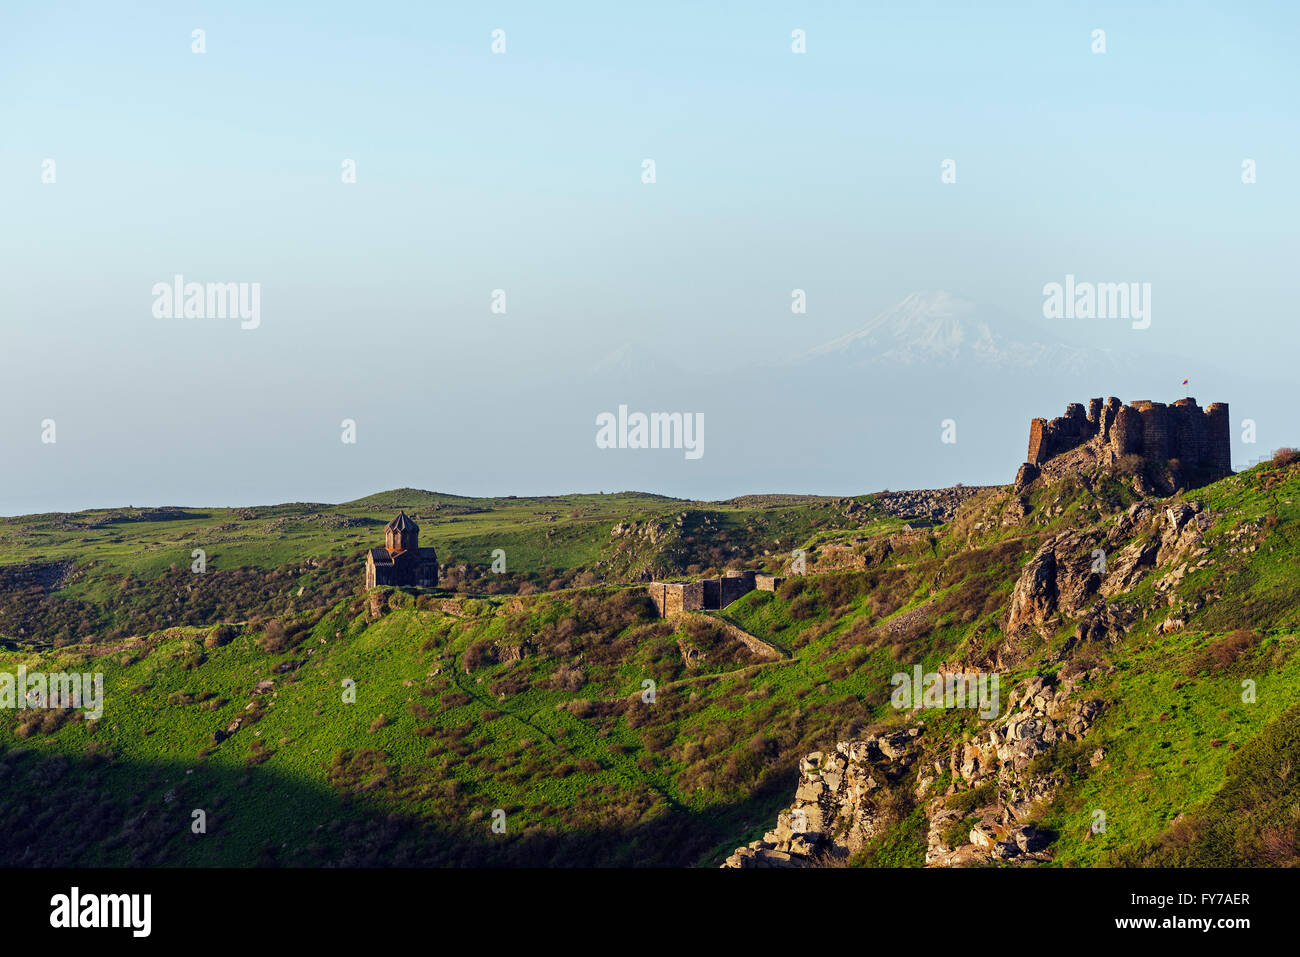 Eurasia, Caucasus region, Armenia, Aragatsotn province, Amberd 7th century fortress on Mt Aragats, Mt Aratat (5137m) in Turkey Stock Photo